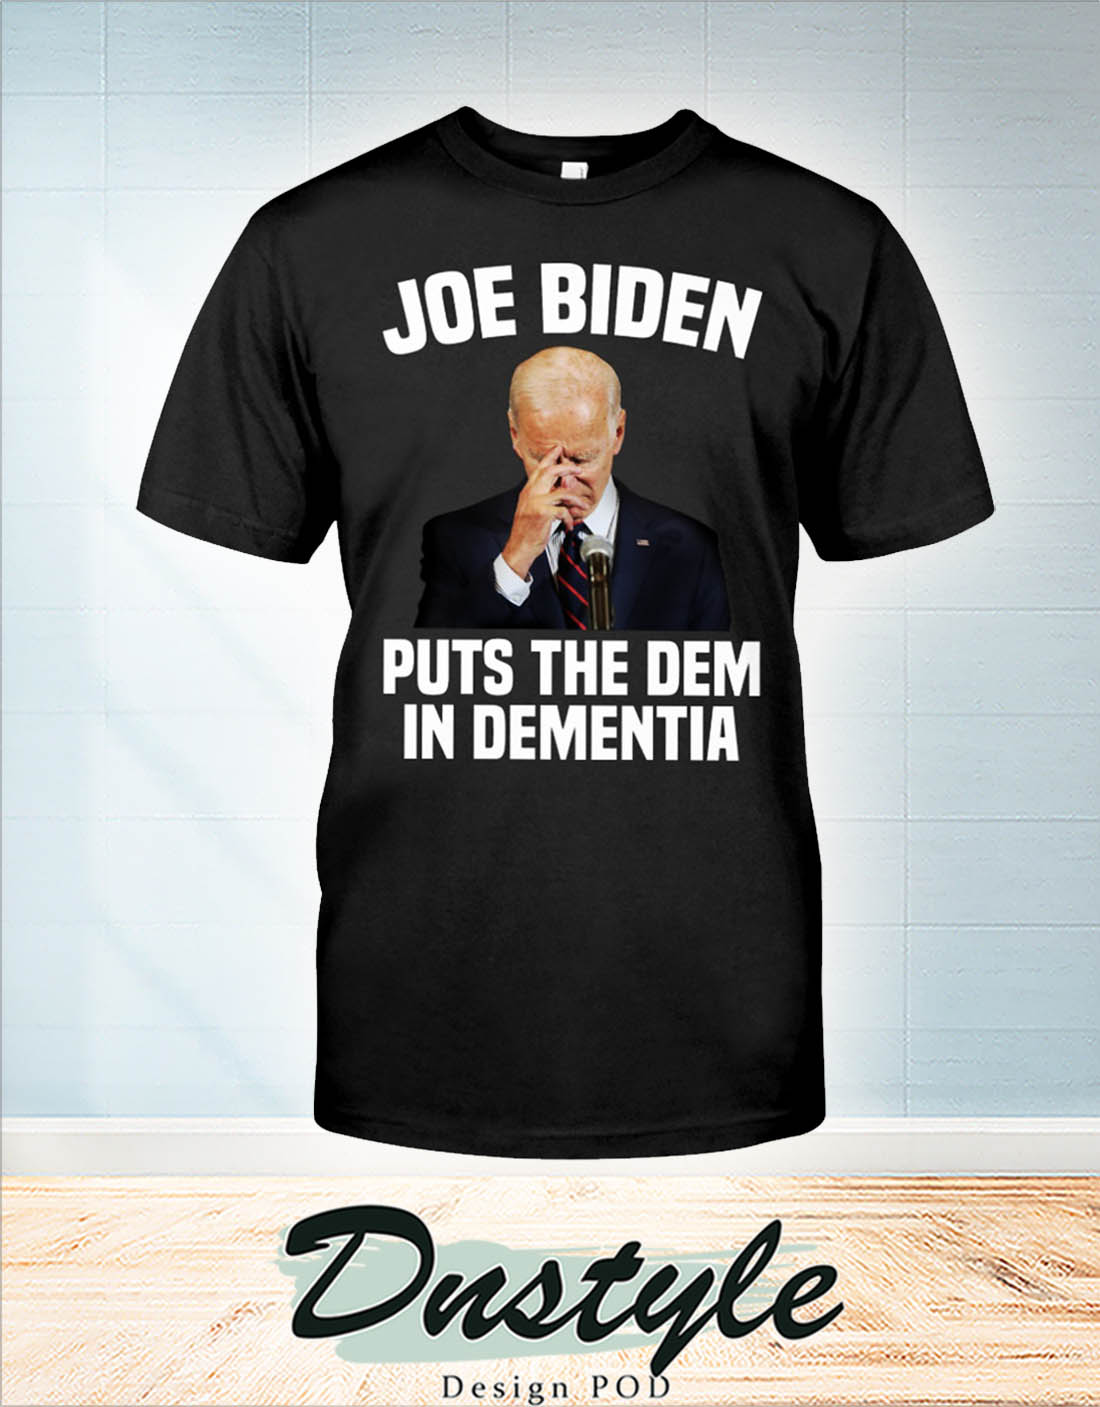 Joe biden puts the dem in dementia shirt